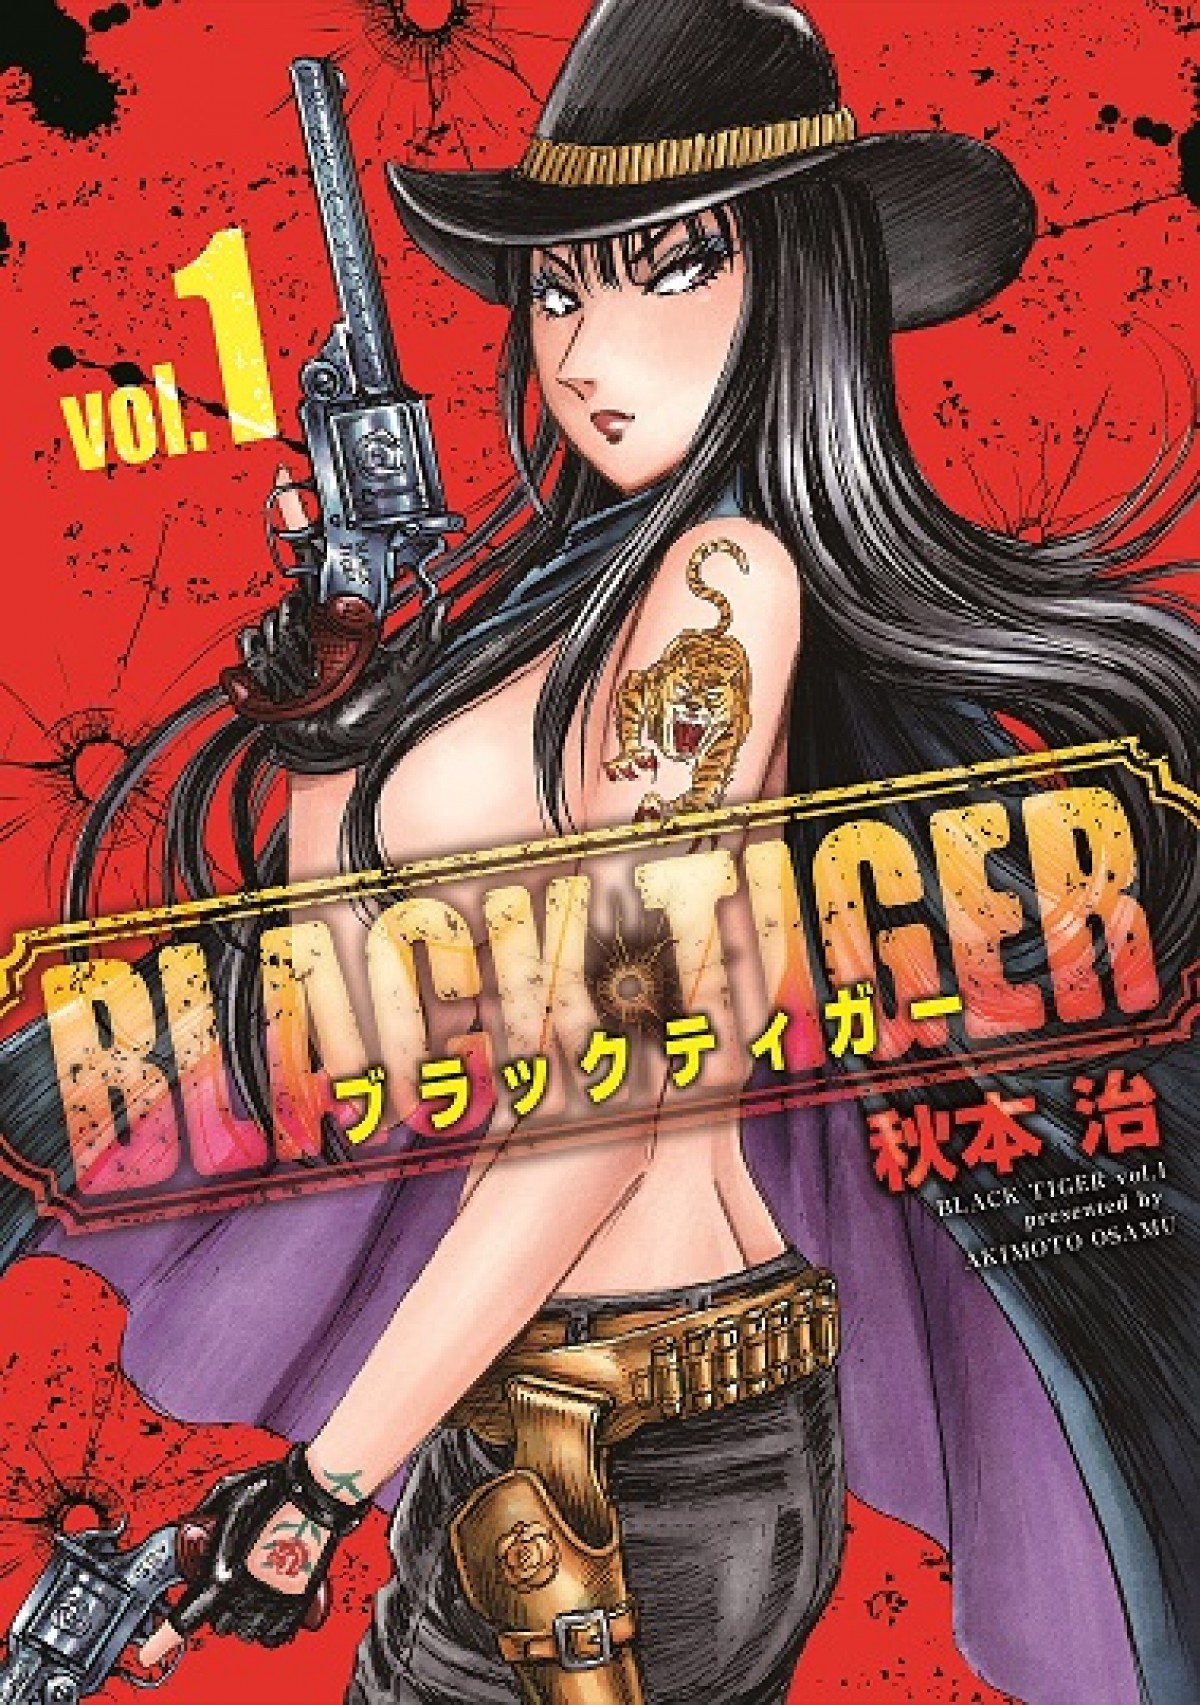 秋本治『こち亀』後初の完全新作『BLACK TIGER』第1巻発売 『Mr.Clice』も同時刊行